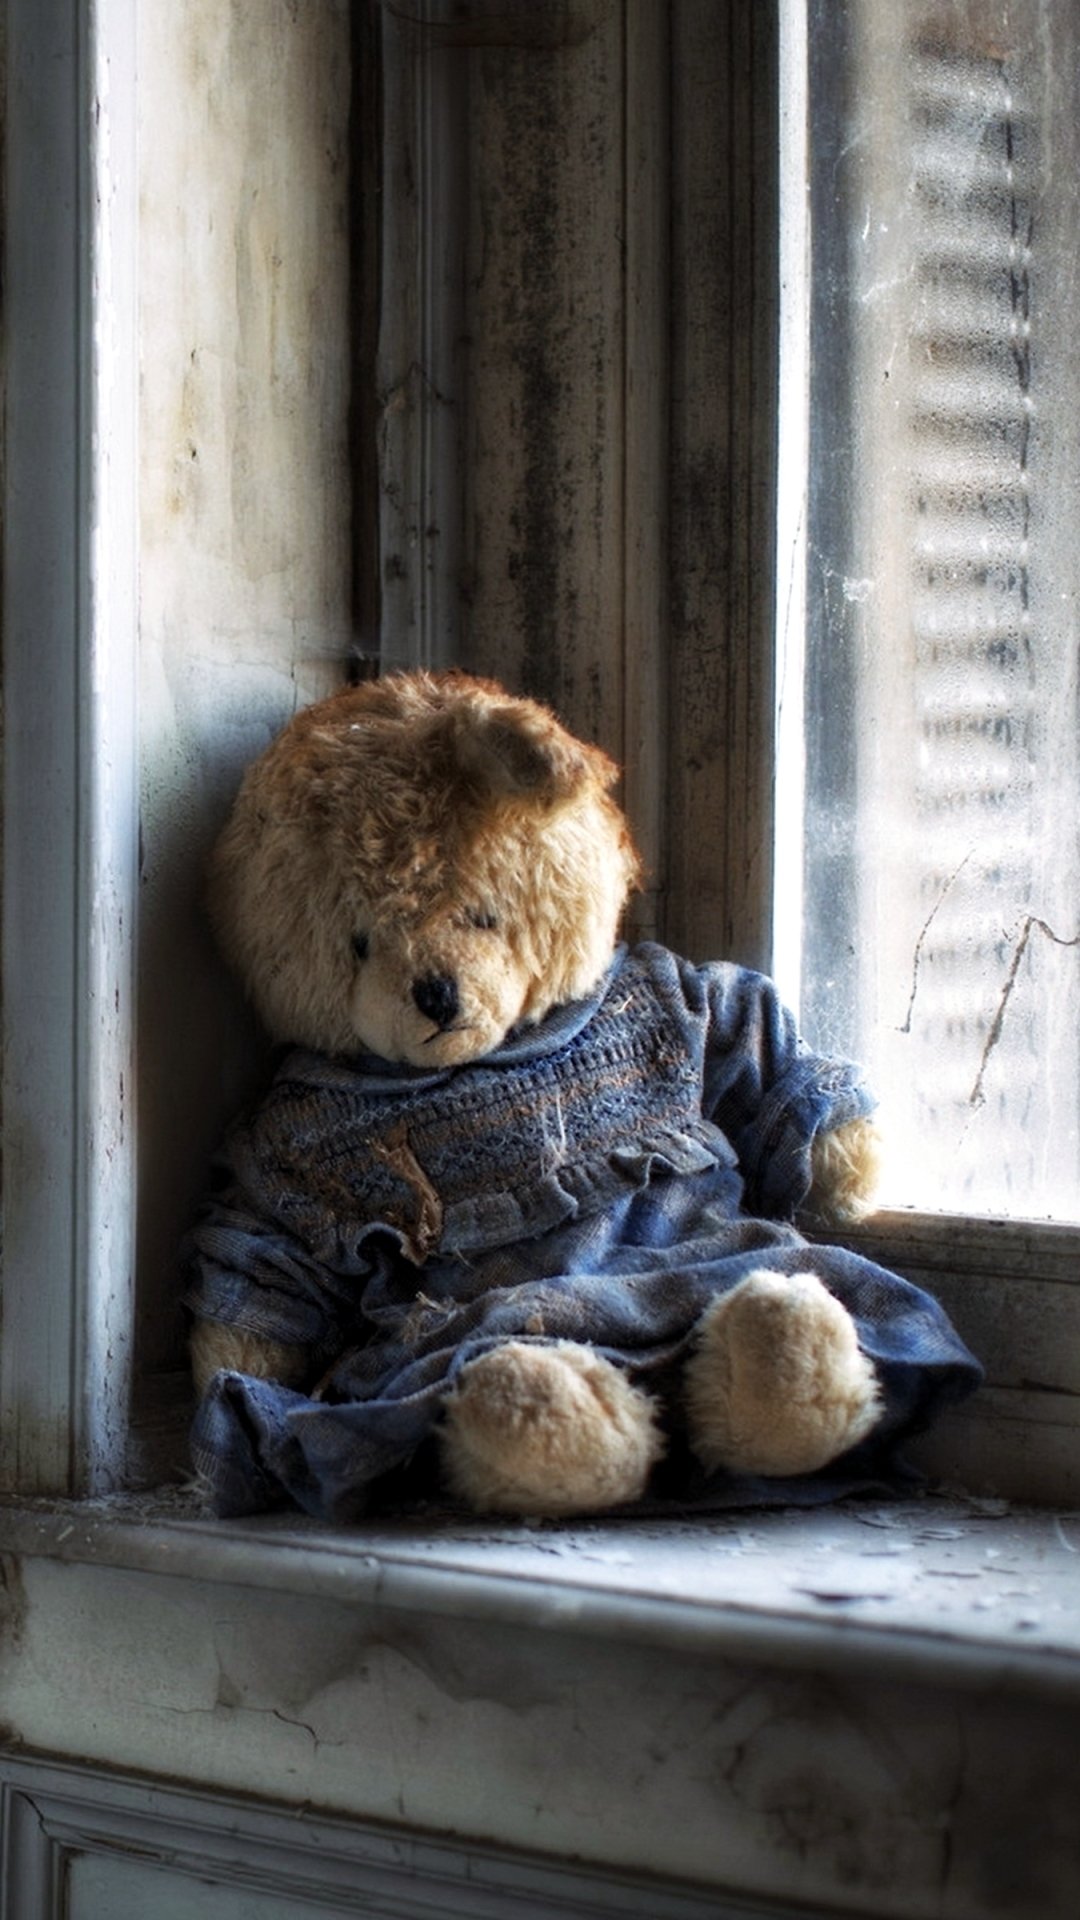 Gấu Teddy Trên Nền Hình Nền Màu Nâu Hình ảnh Sẵn có  Tải xuống Hình ảnh  Ngay bây giờ  Ban ngày Dễ thương Gấu  Động vật có vú  iStock